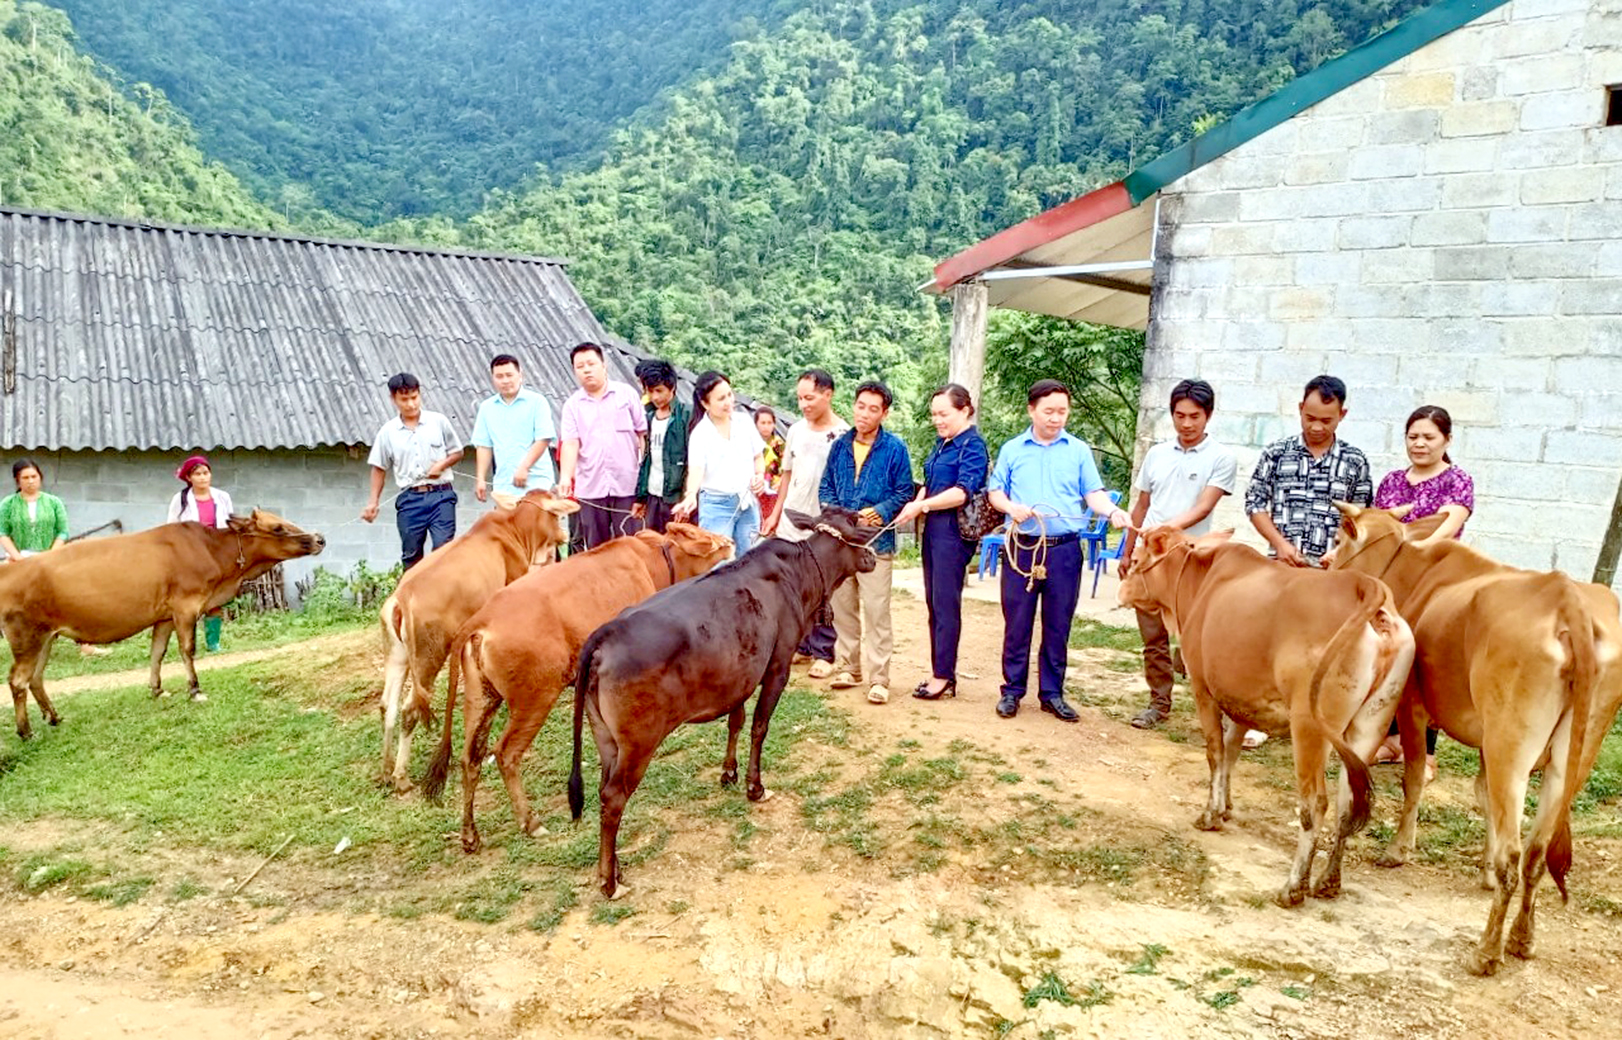 Giải ngân nguồn vốn của T.Ư thực hiện dự án nuôi bò sinh sản luân chuyển tại xã Ngam La.